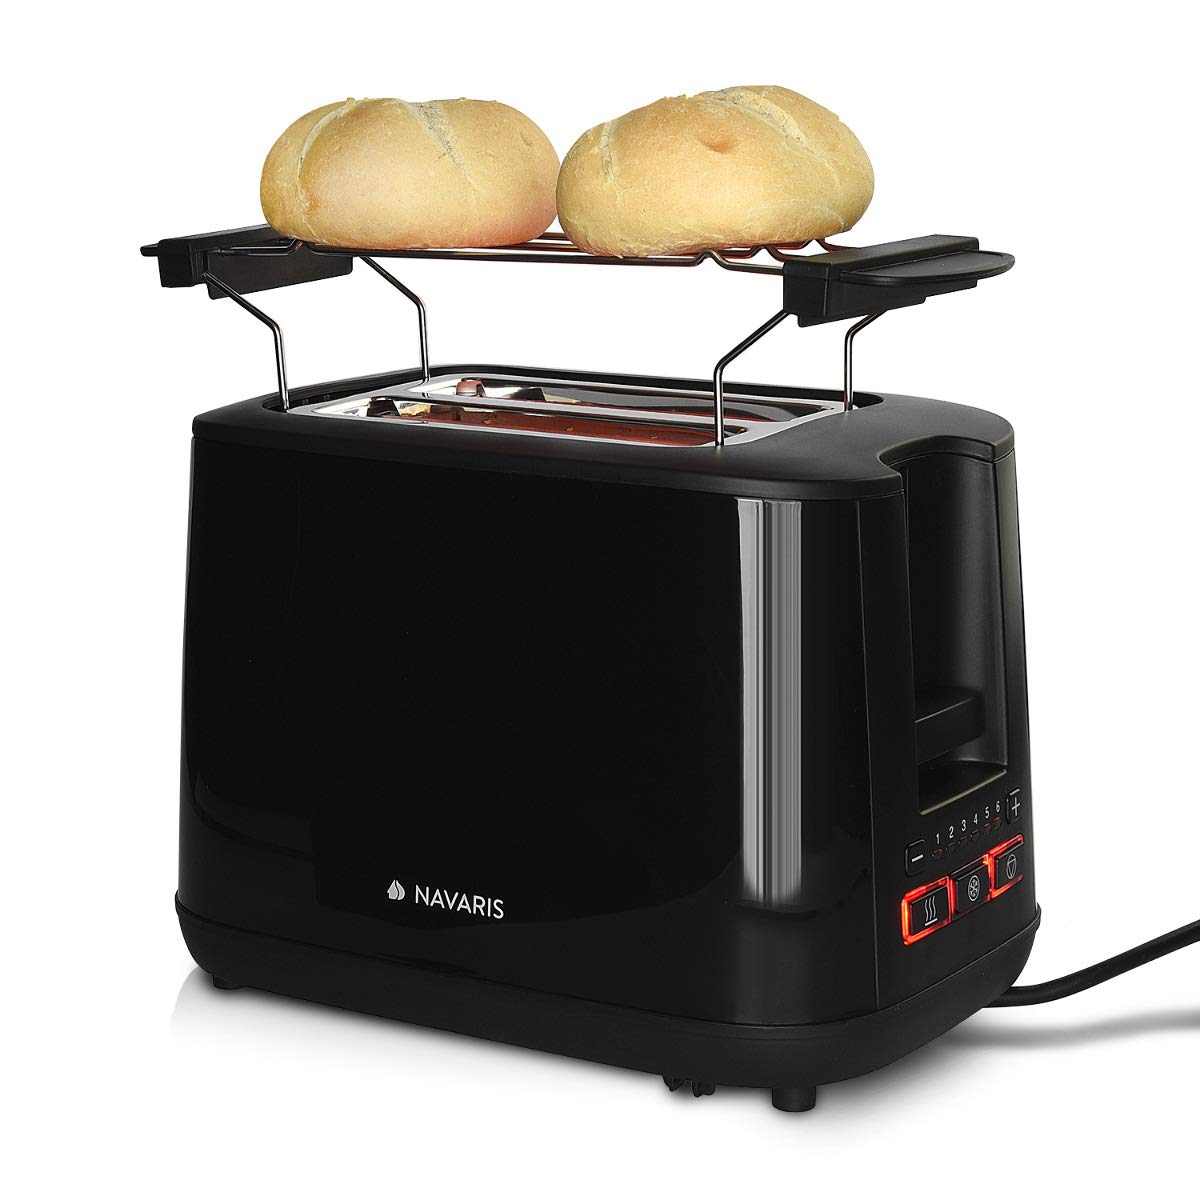 Navaris Doppelschlitz Toaster mit Brötchenaufsatz - 2 extragroße Toast Schlitze - 6 Stufen - automatische Brotzentrierung - 1000W - Schwarz